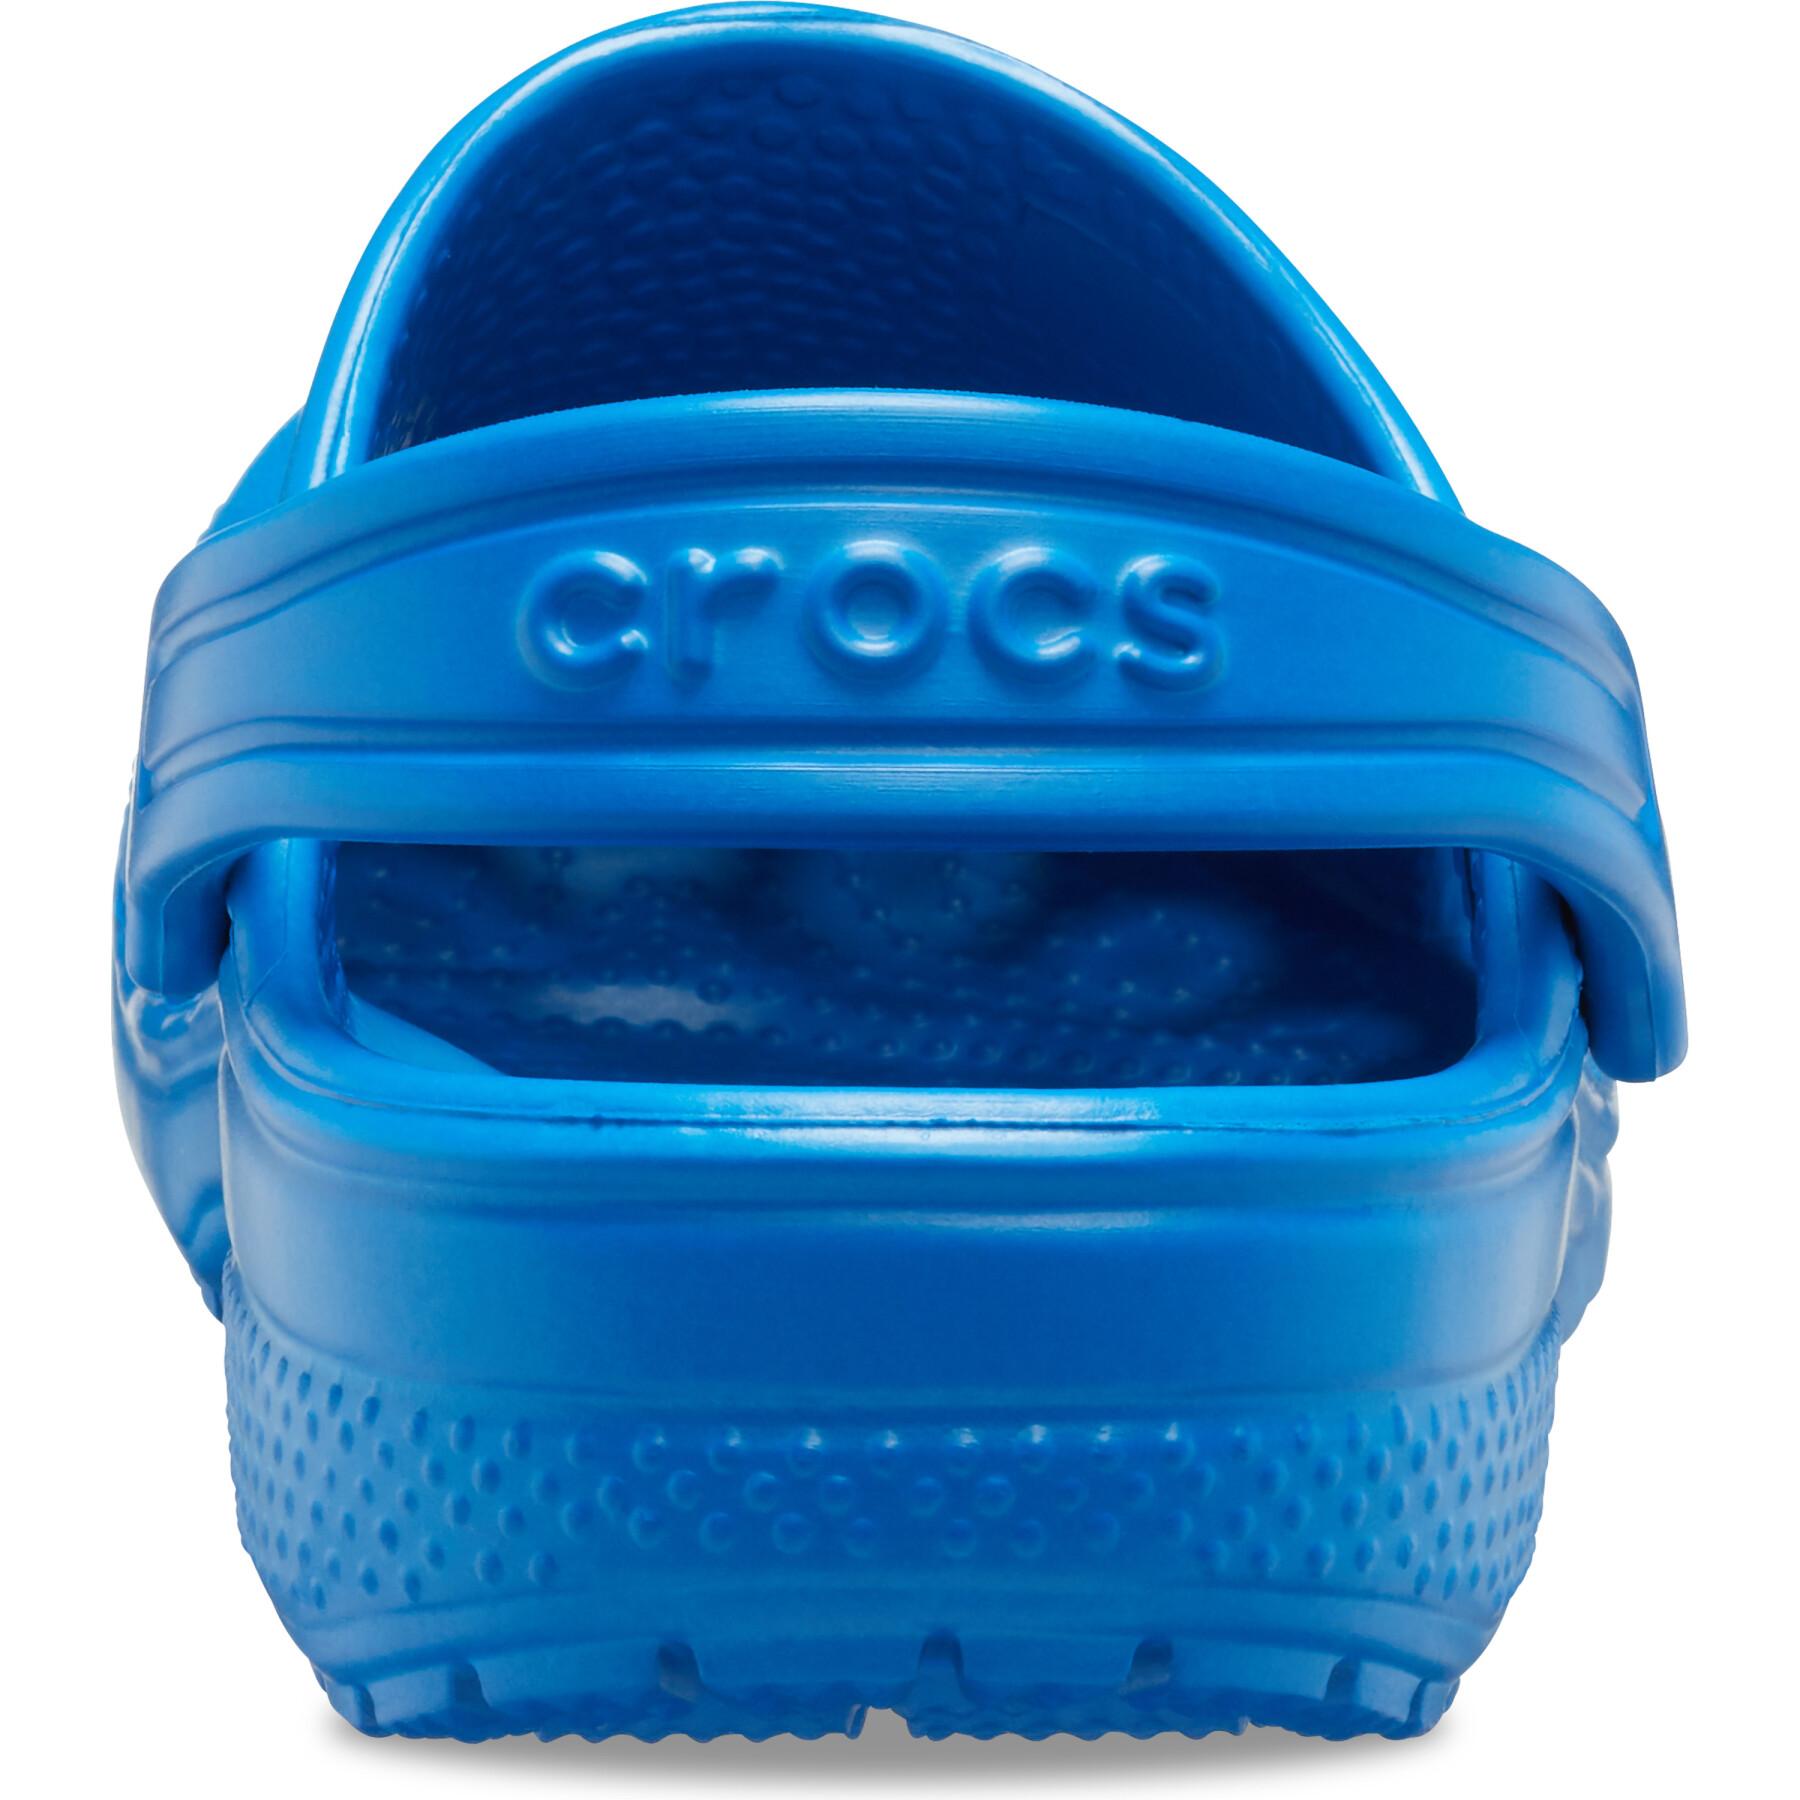 Klassische Baby-Clogs Crocs T